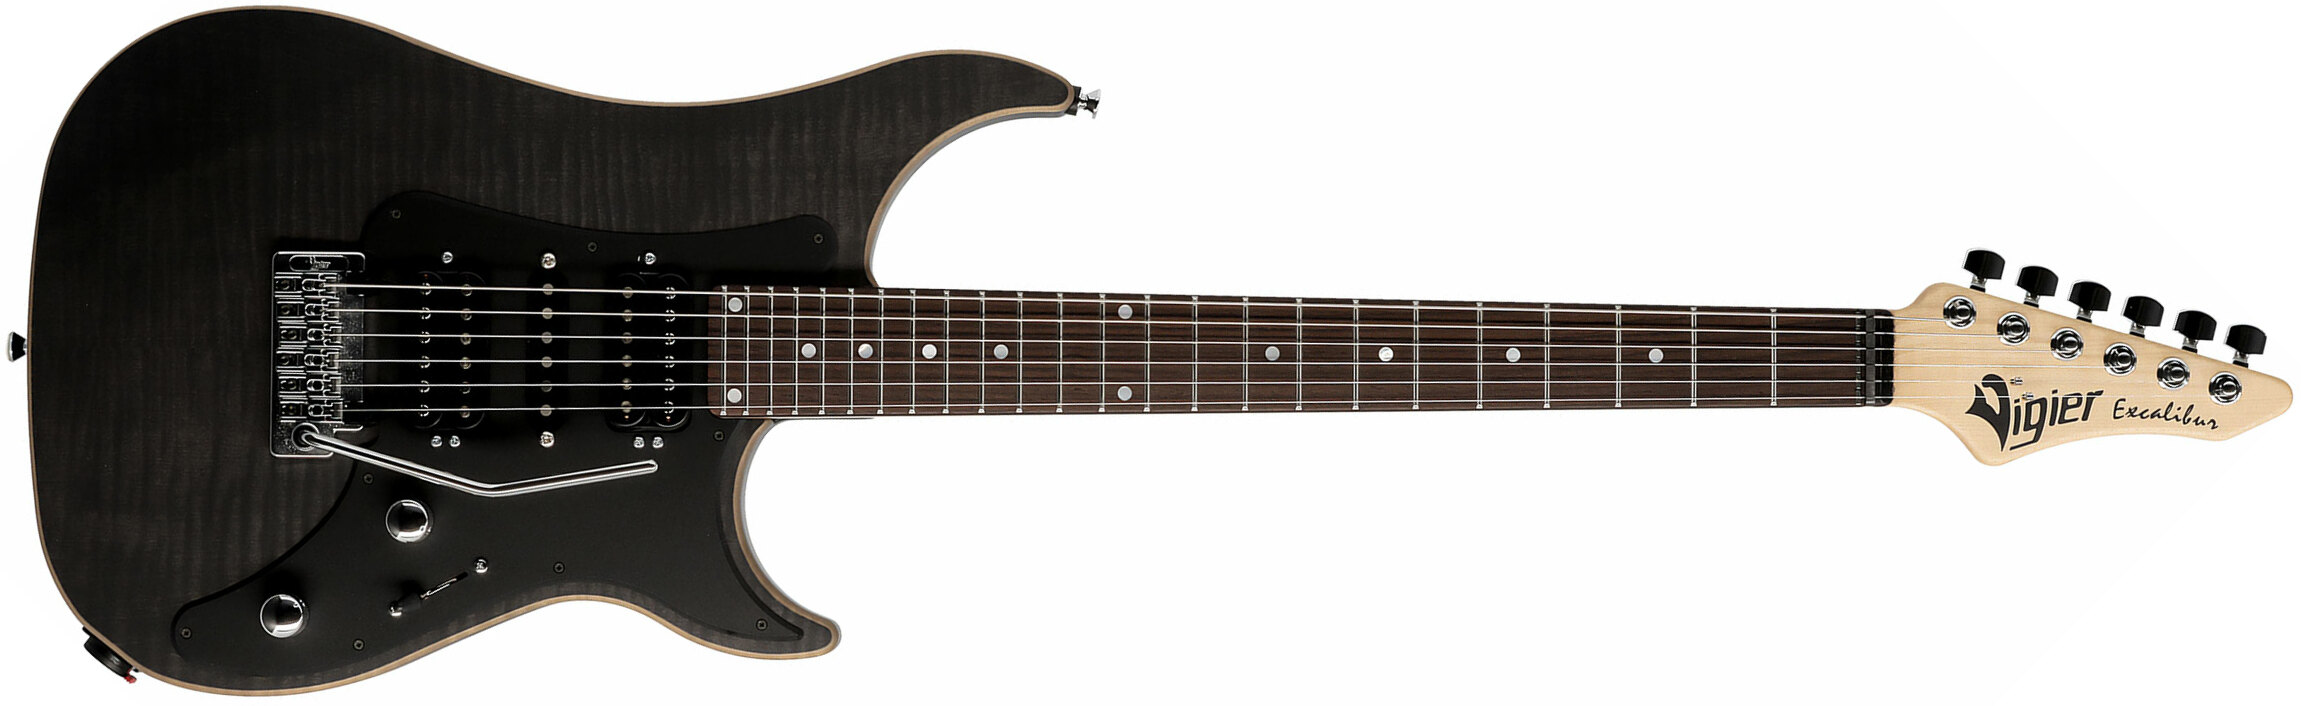 Vigier Excalibur Special Hsh Trem Rw - Black Diamond Matte - Elektrische gitaar in Str-vorm - Main picture